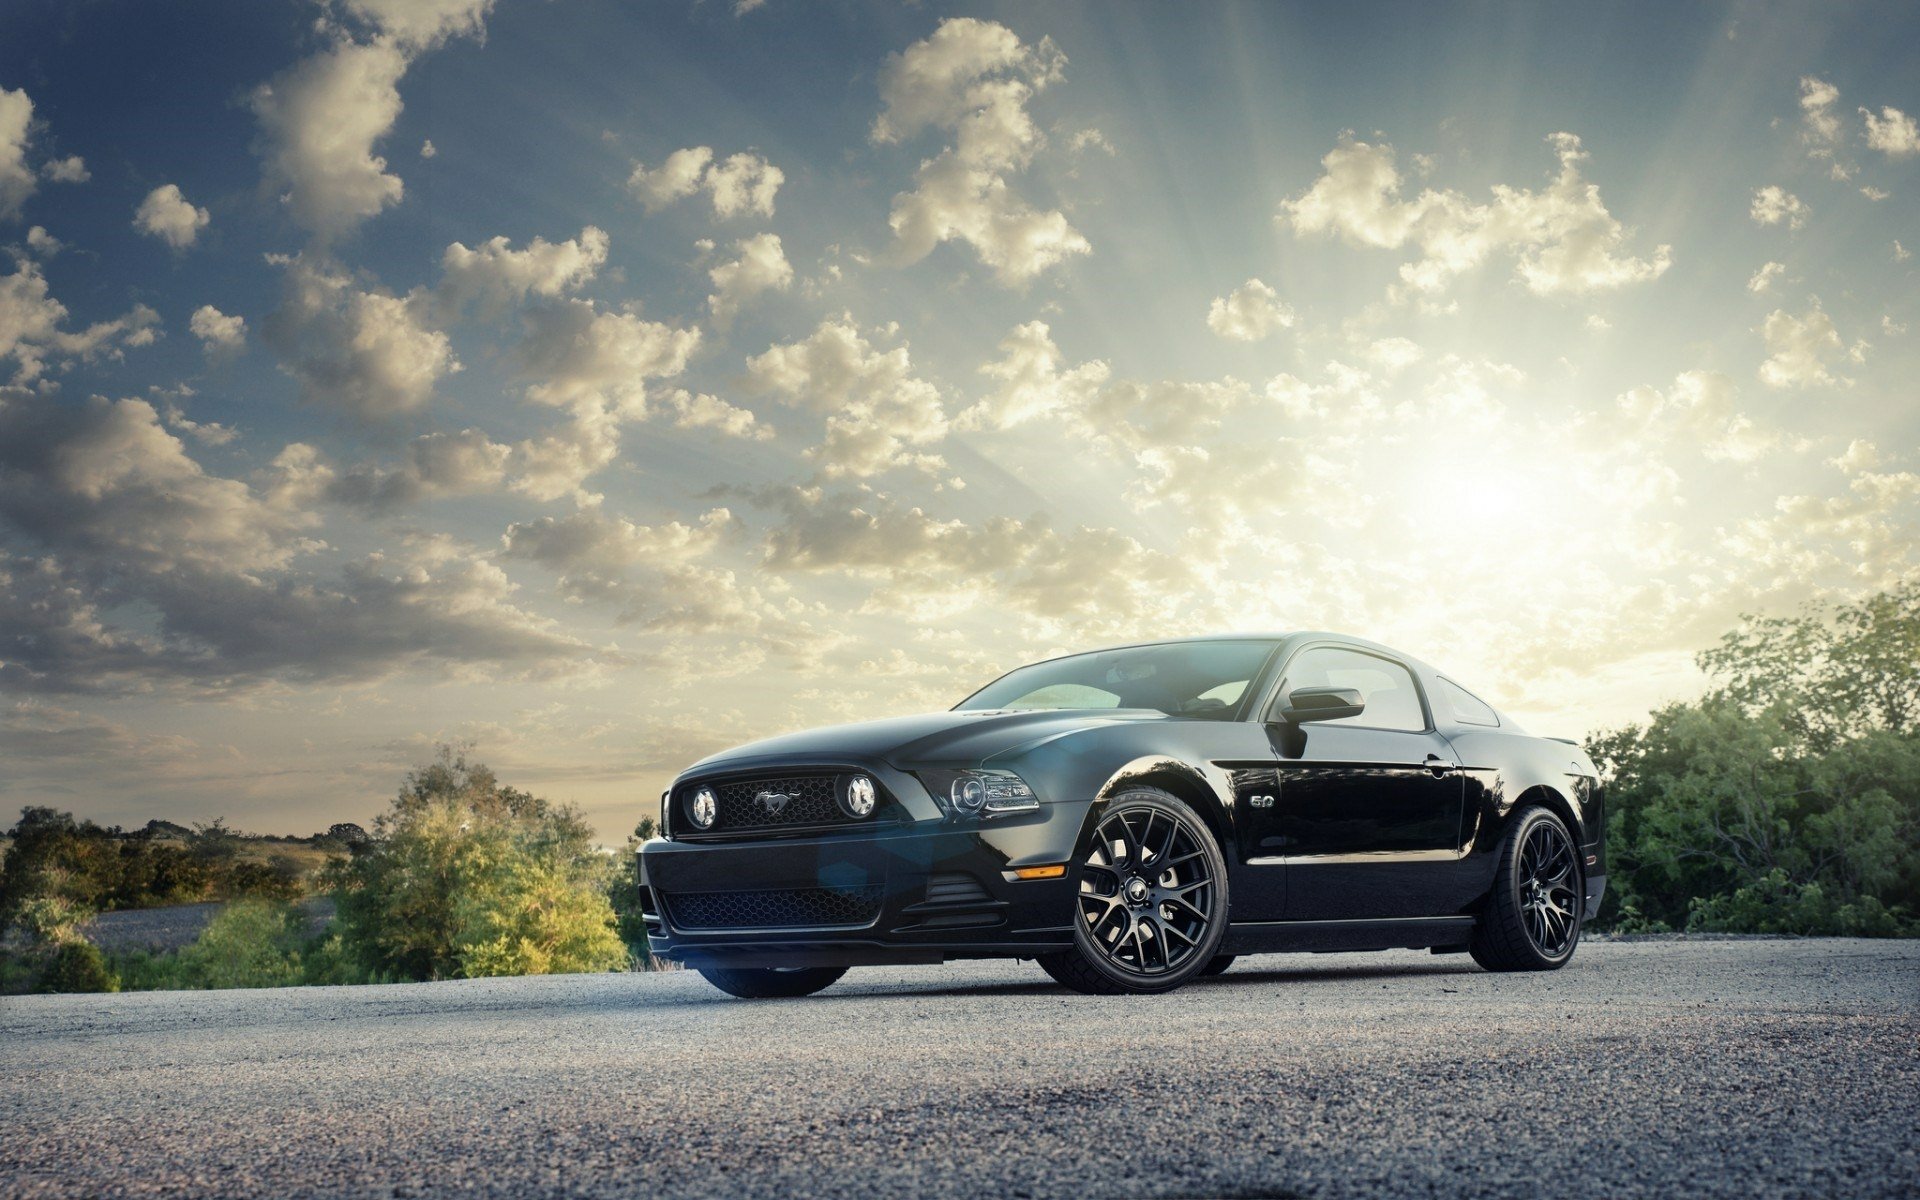 Ford Mustang - chiếc xe mang tới sự nổi tiếng cho hãng Ford với thiết kế cổ điển và sức mạnh không thể bỏ qua. Hãy cùng ngắm nhìn những hình ảnh đẹp mắt của chiếc xe phiên bản đặc biệt và khám phá sức hút của Ford Mustang.